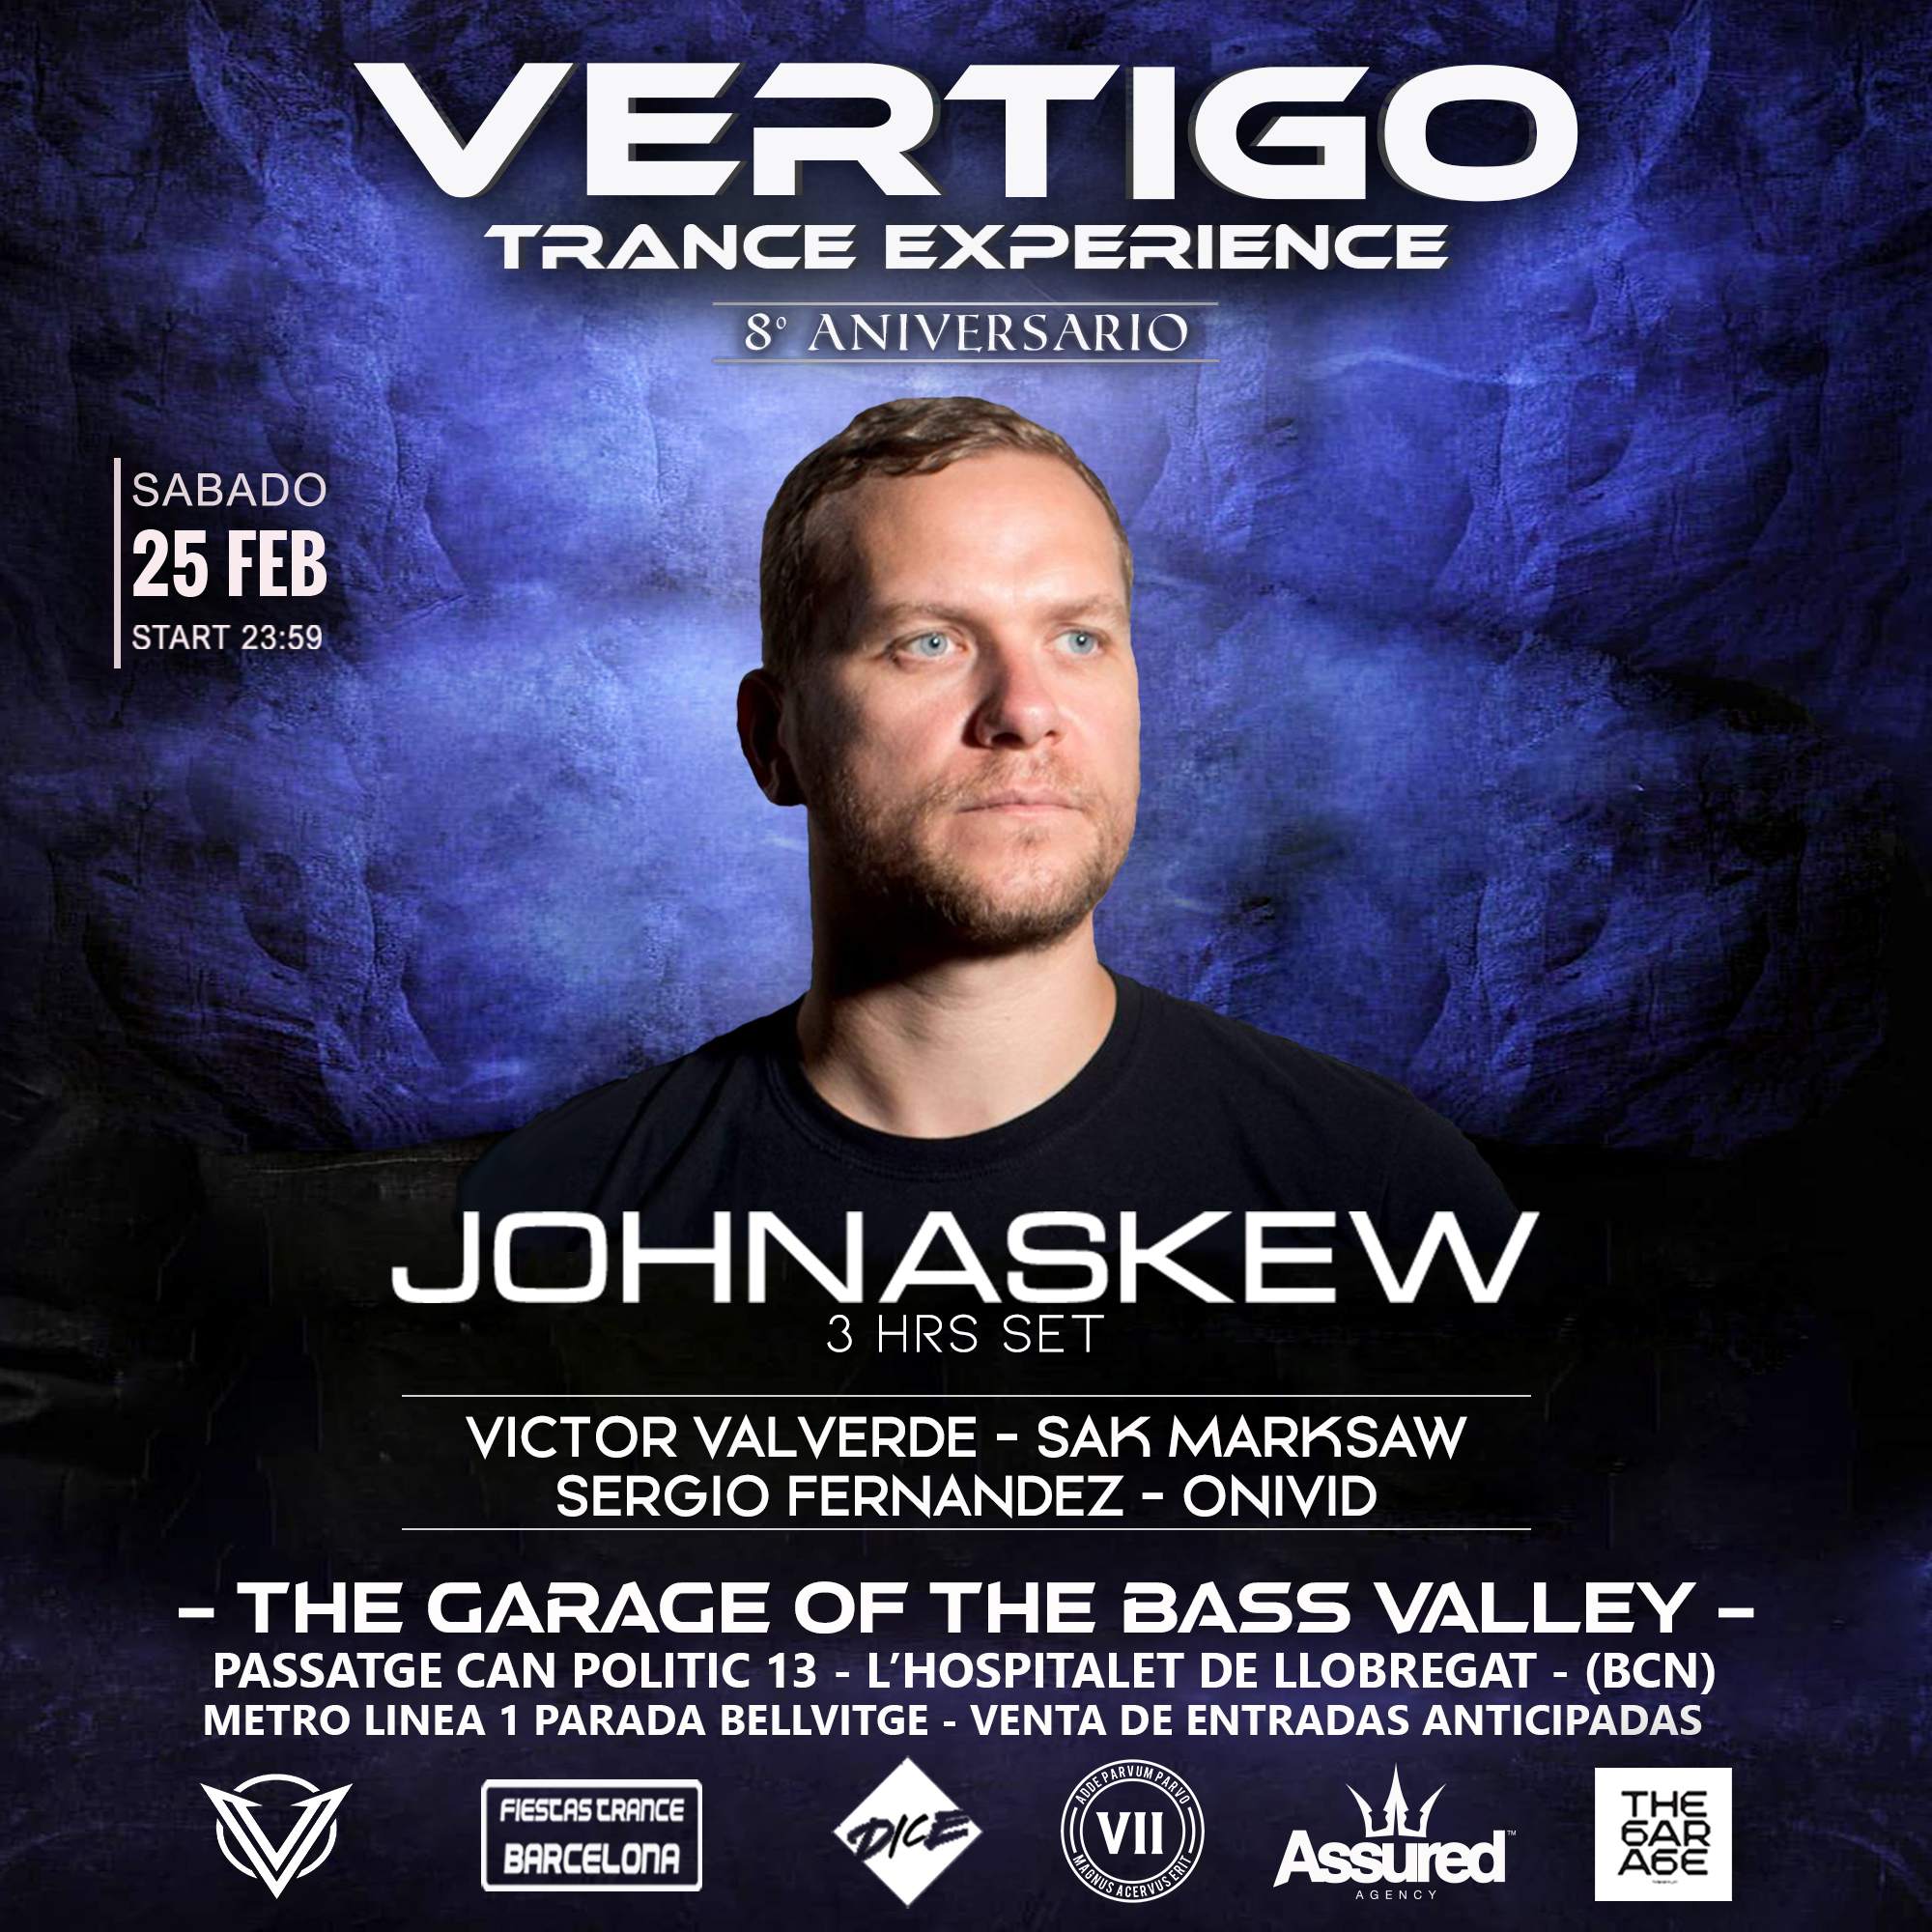 Vertigo Trance Experience (8º Aniversario John Askew) - フライヤー表